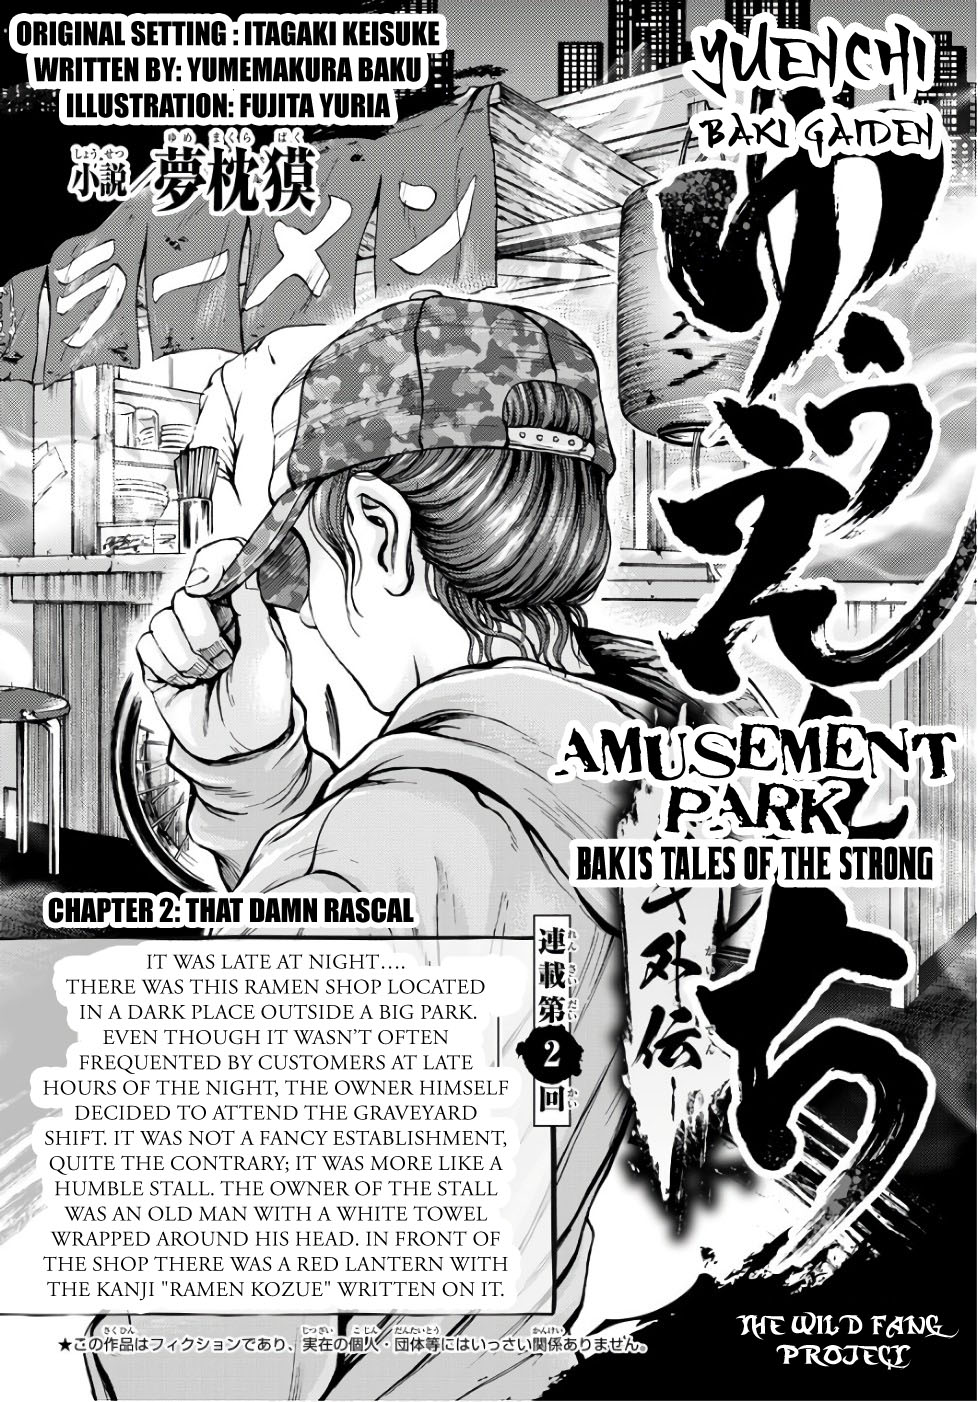 Yuenchi: Baki Gaiden Vol. 1 Ch. 2 Part 2